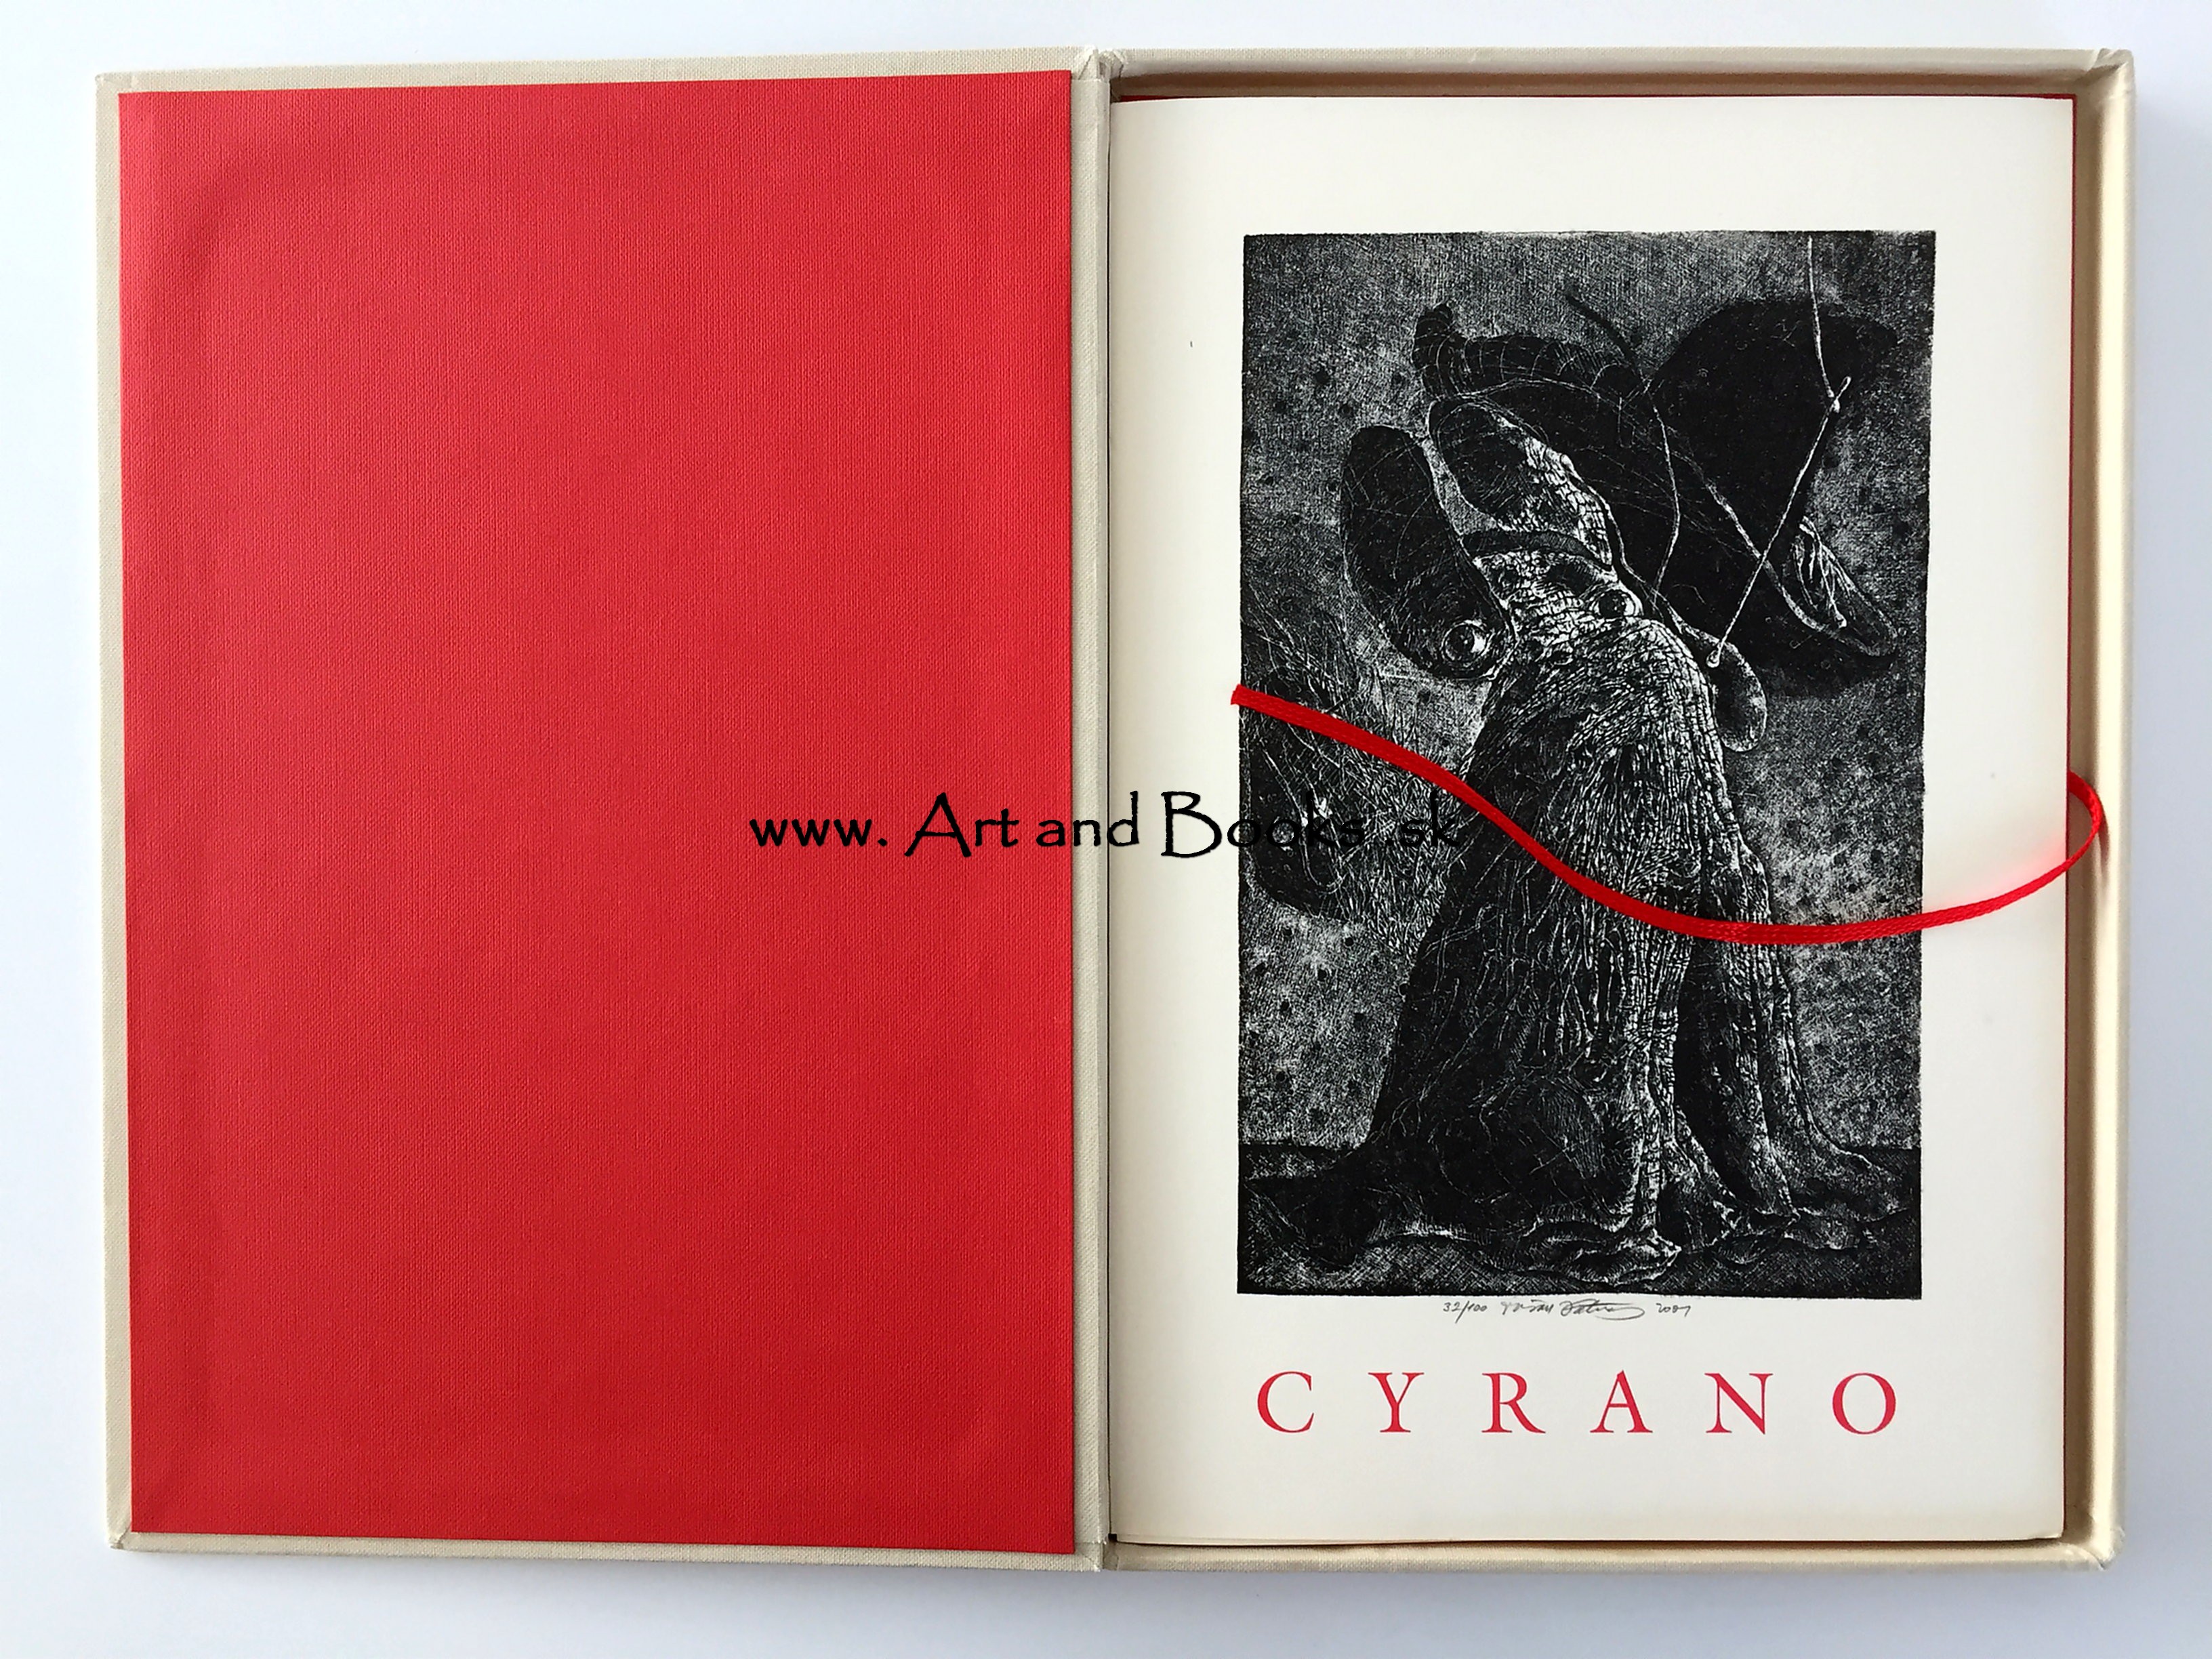 Edmond Rostand - Cyrano (2001) (sold/predané) ● 115615